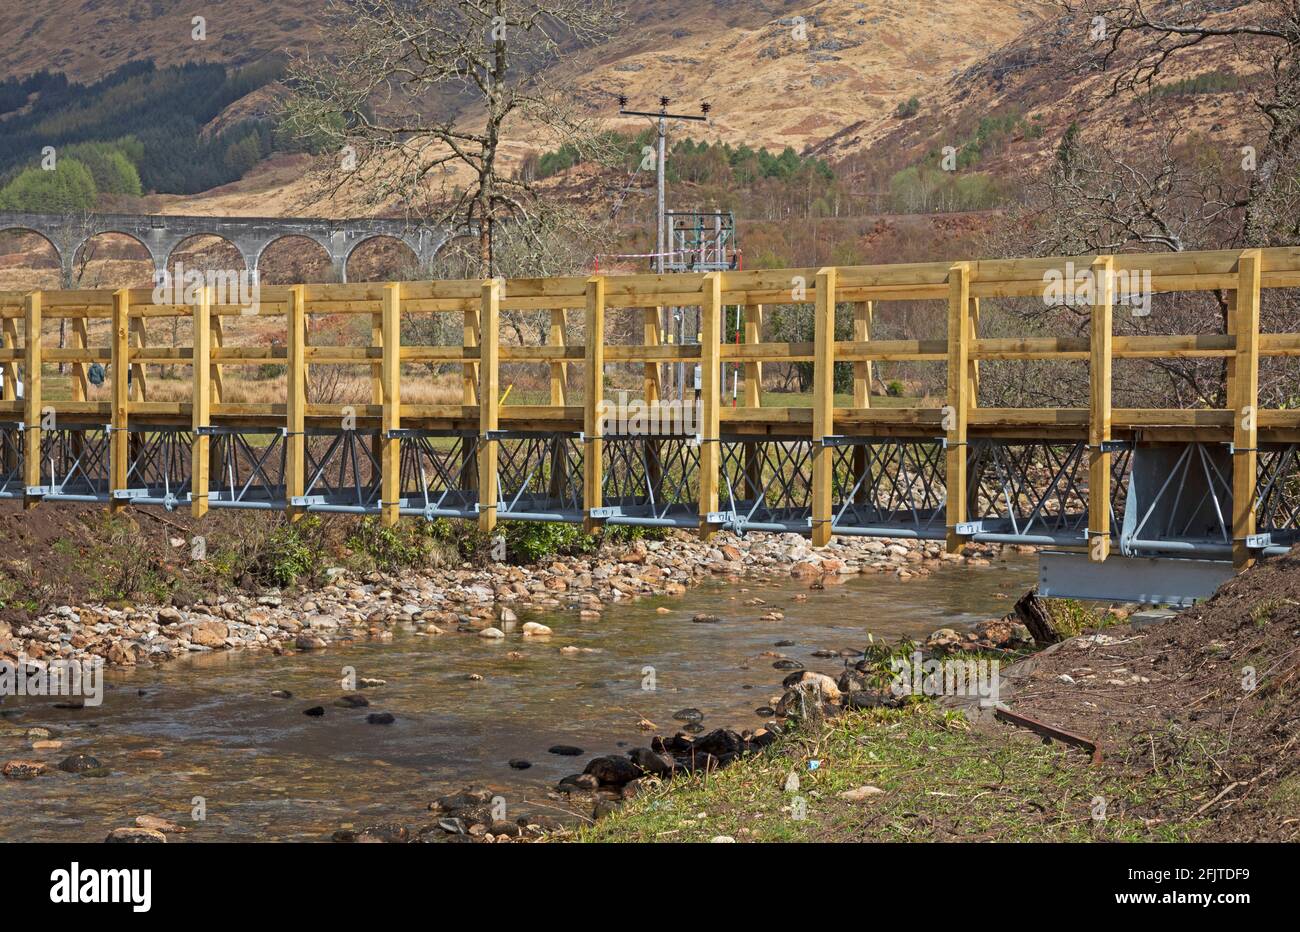 Glenfinnan, Lochaber, Großbritannien. April 2021. Die erste Fahrt mit dem Jacobite Steam Train im Jahr 2021 ermutige nicht sehr viele Besucher zum neu erbauten Parkplatz, der zur neuen 'Glenfinnan Wee Harry Potter Bridge' führt, die von der Gemeinde, die £8,467 aufbaute, Crowdfunding finanziert wurde, um ihnen den Bau einer Brücke über den Fluss zu ermöglichen Finnan, um die normalen 350,000 Touristen, die jedes Jahr ankommen, sicher zu halten und von der befahrenen Straße, die zwischen Fort William und Mallaig verläuft. Stockfoto